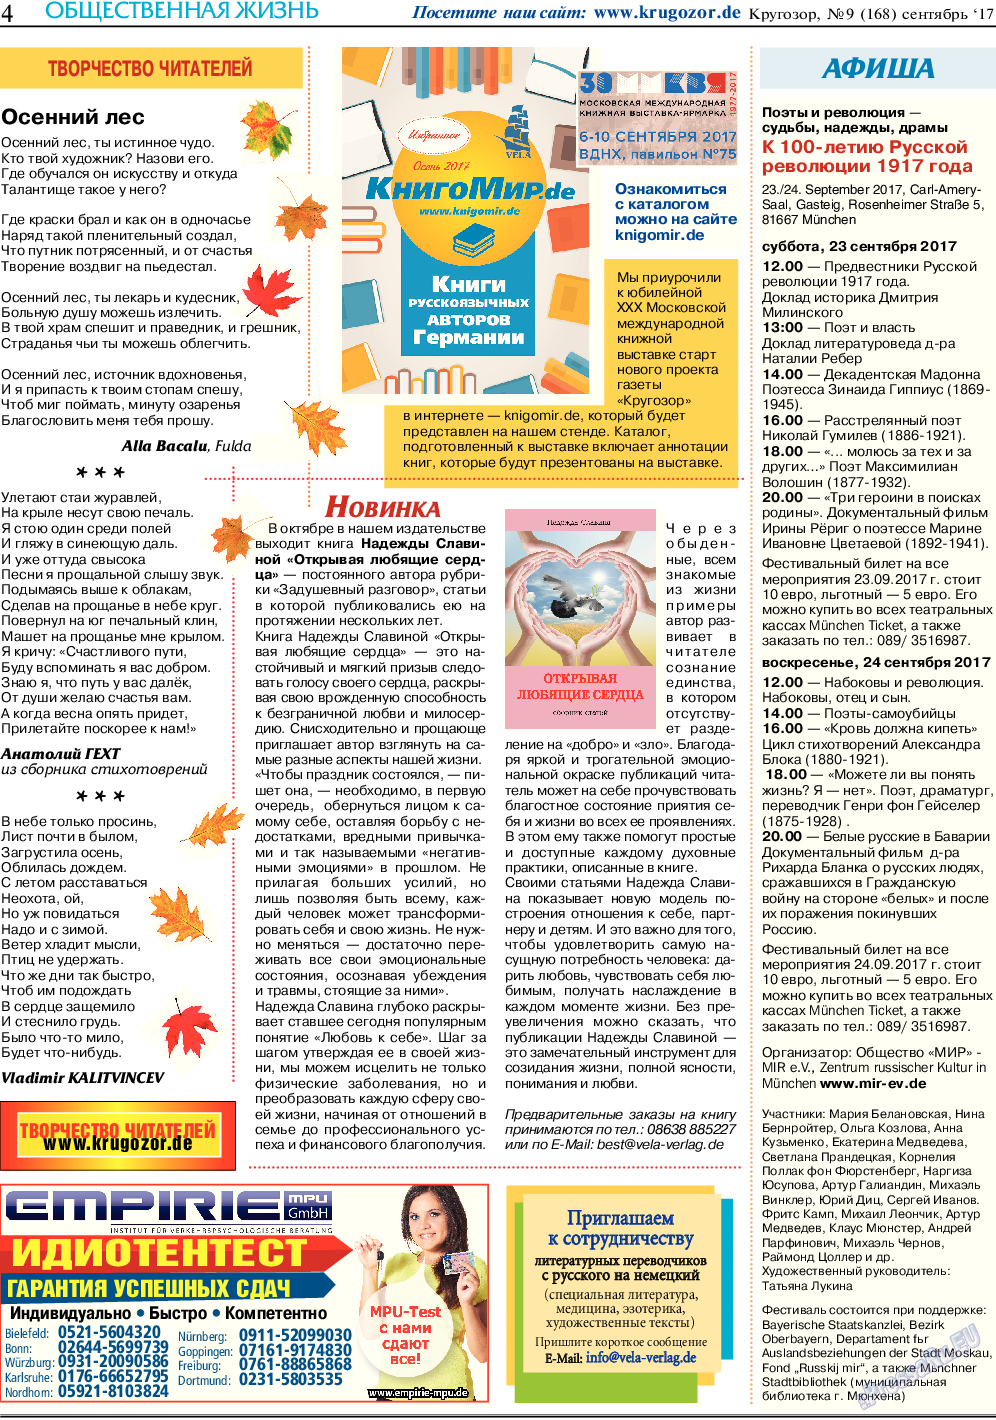 Кругозор (газета). 2017 год, номер 9, стр. 4